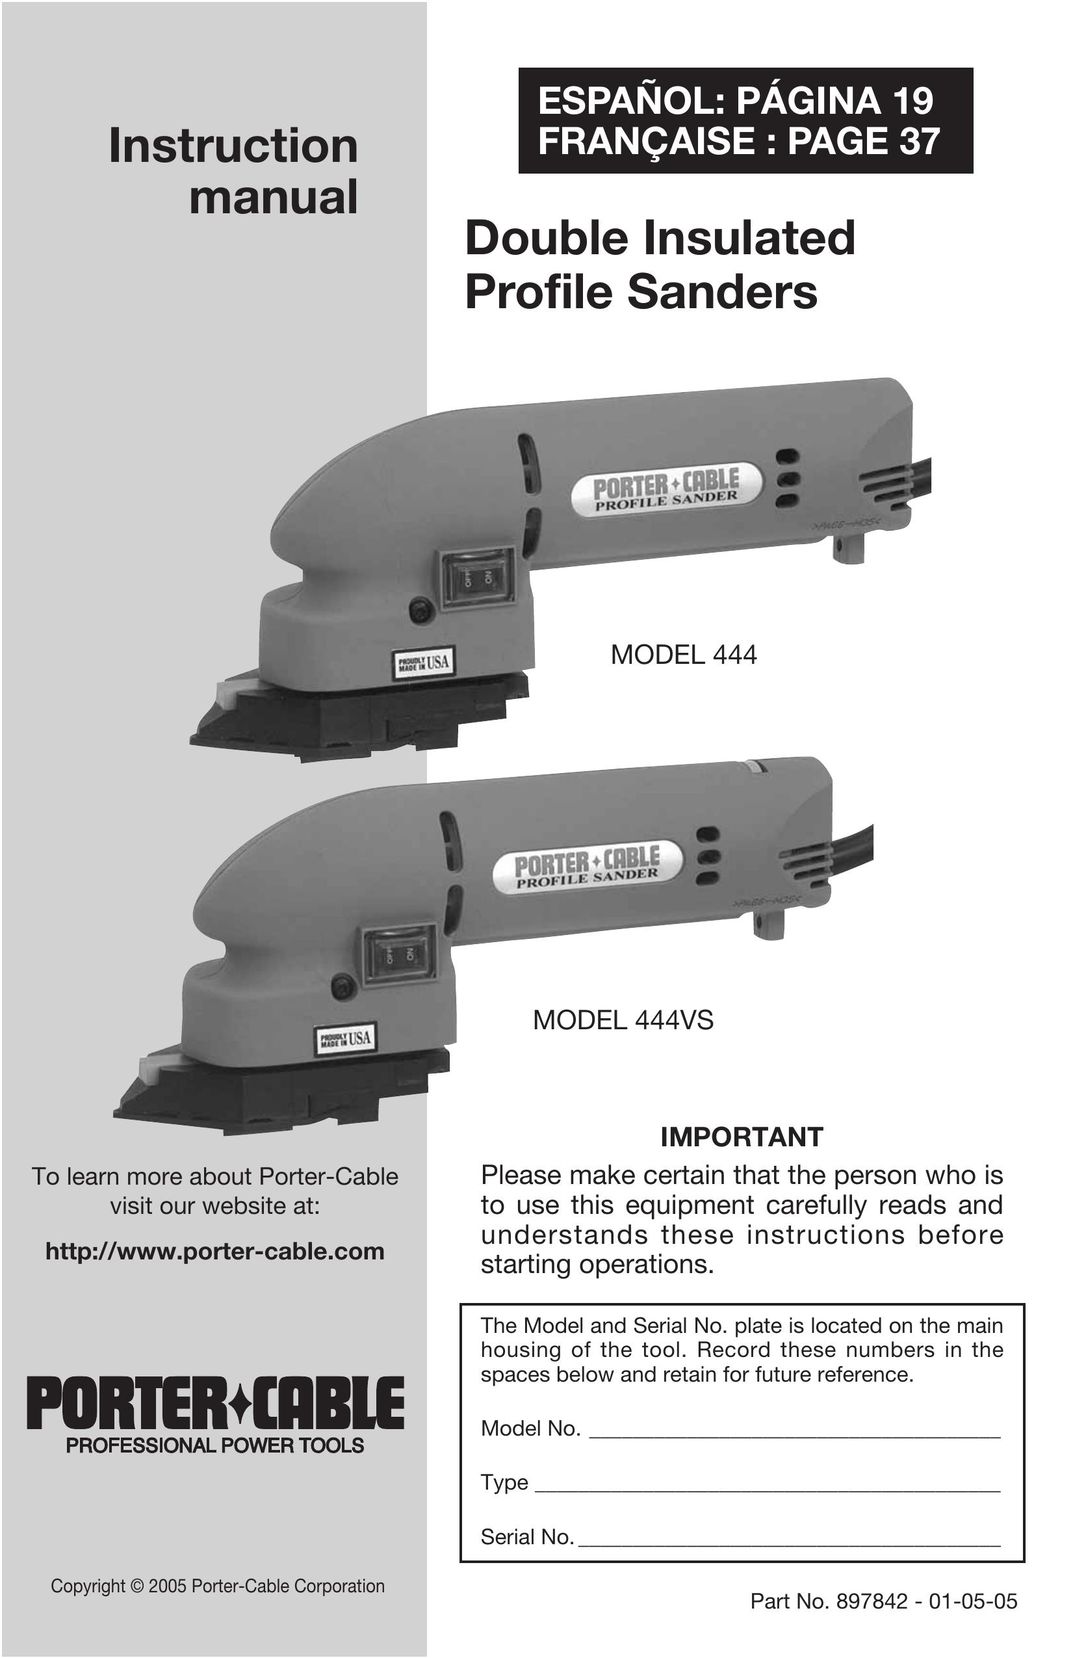 Porter-Cable 444 Sander User Manual